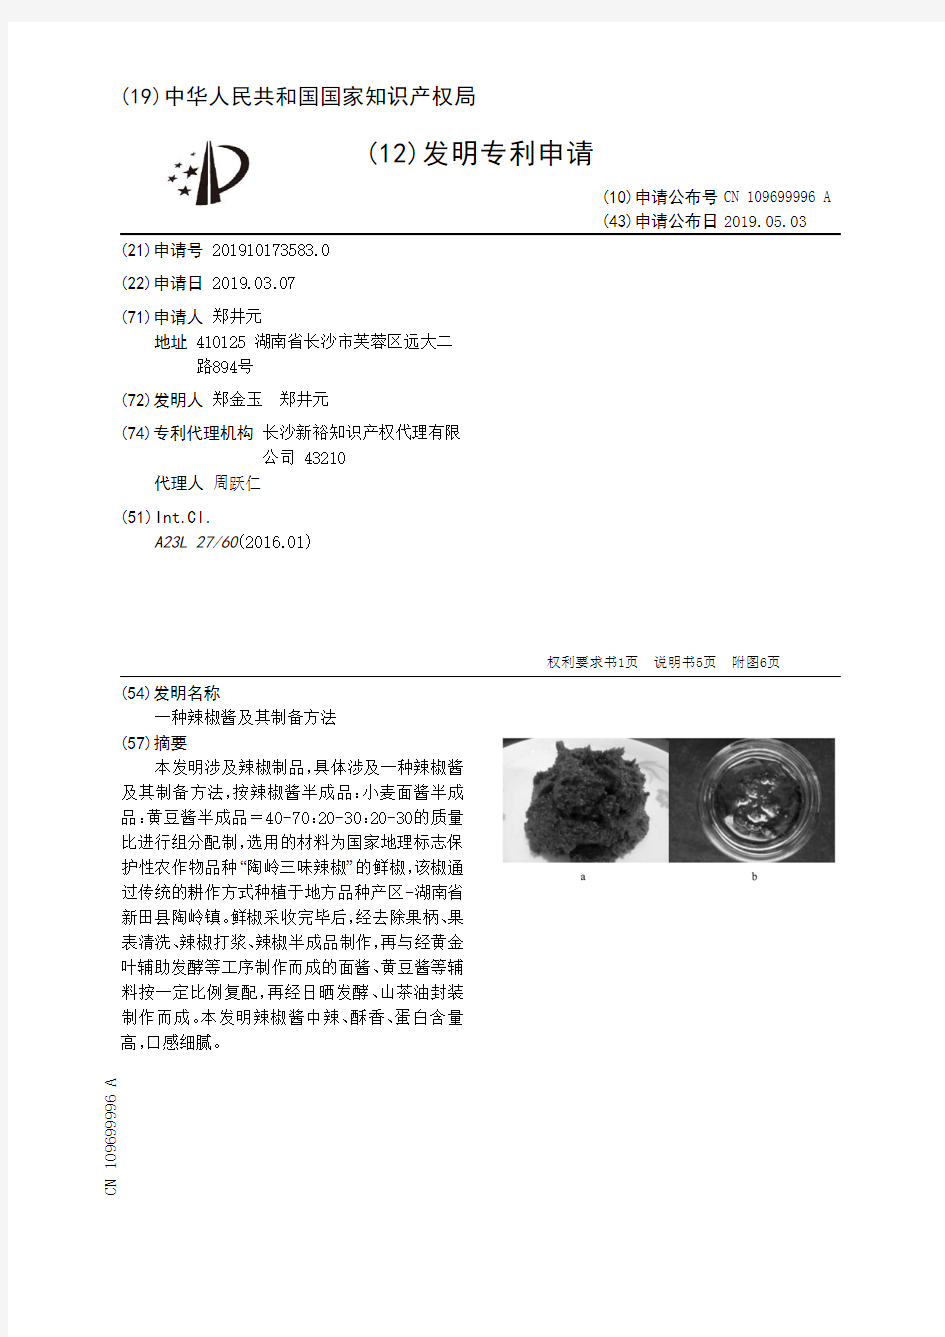 【CN109699996A】一种辣椒酱及其制备方法【专利】